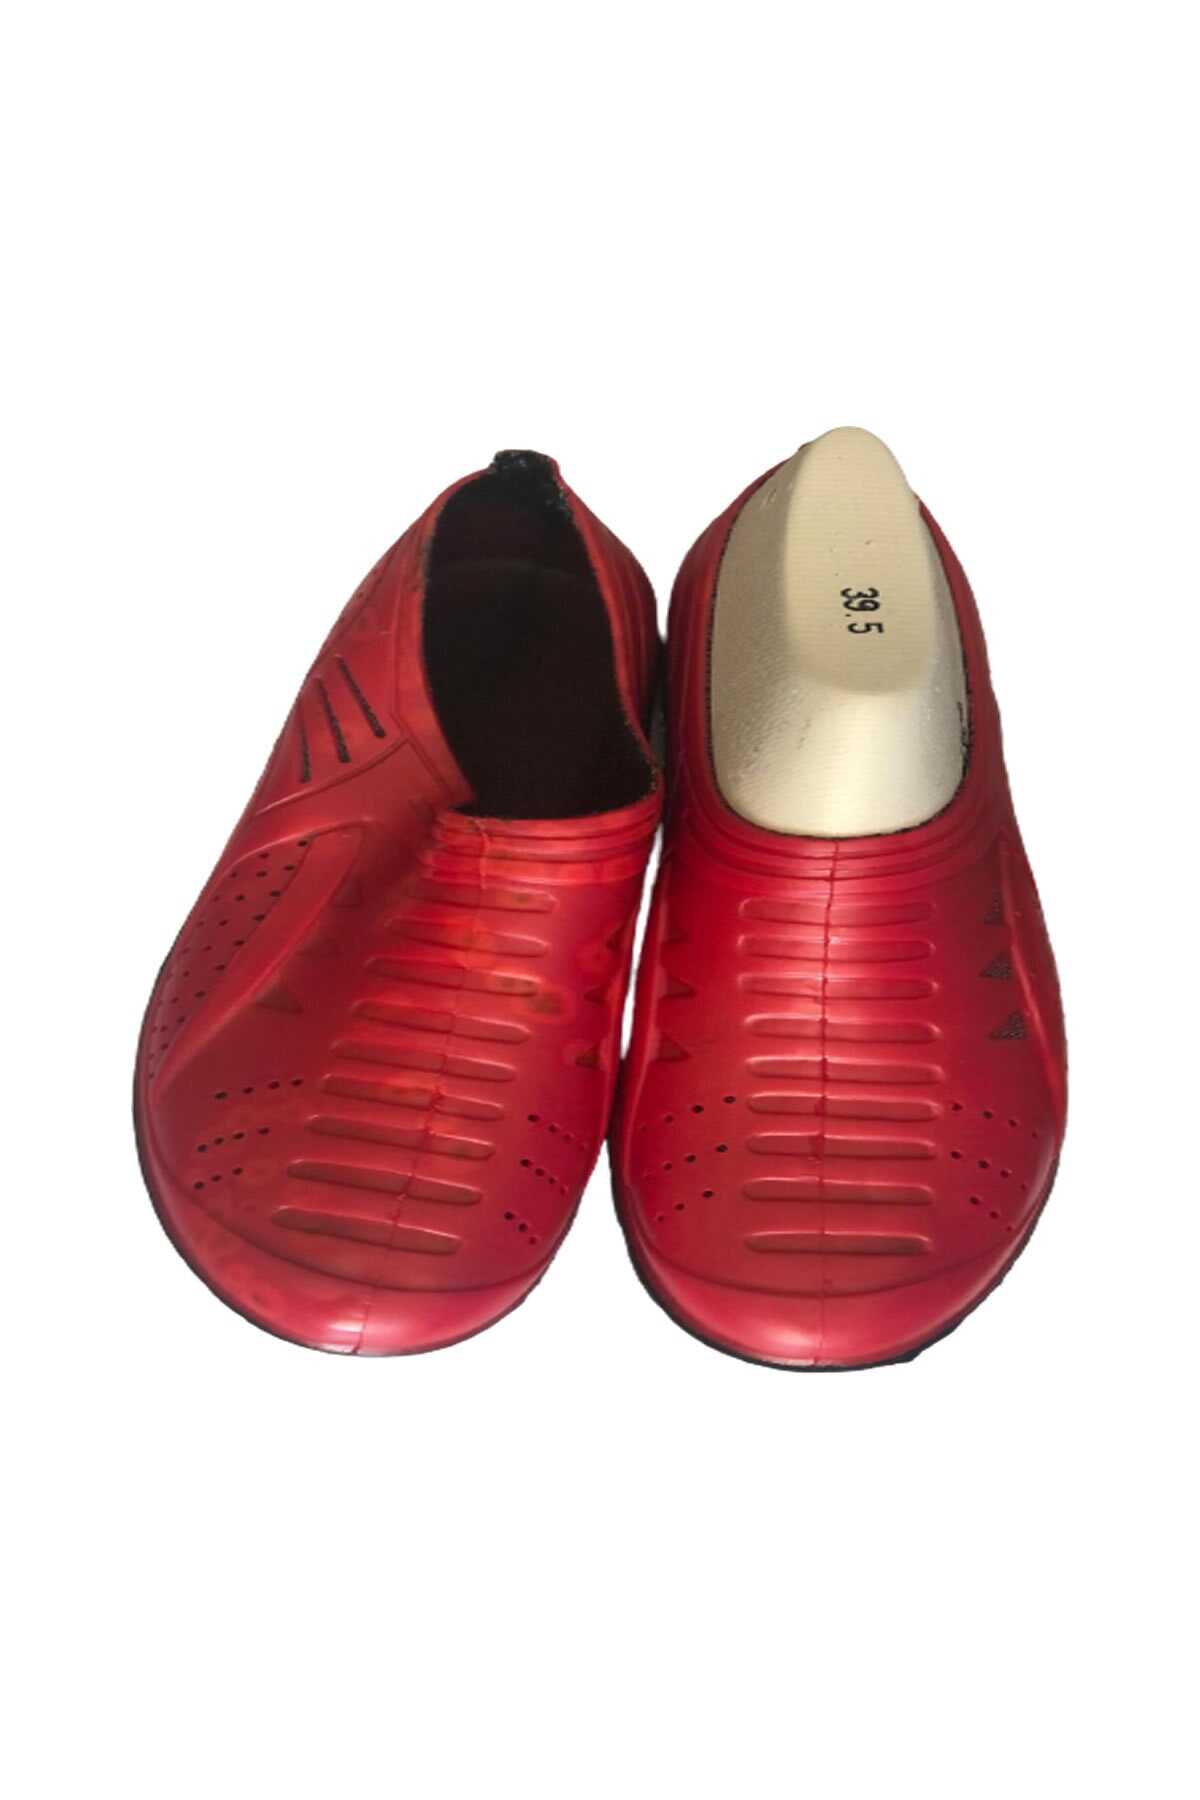 کفش دریایی یونیسکس قرمز برند Savana